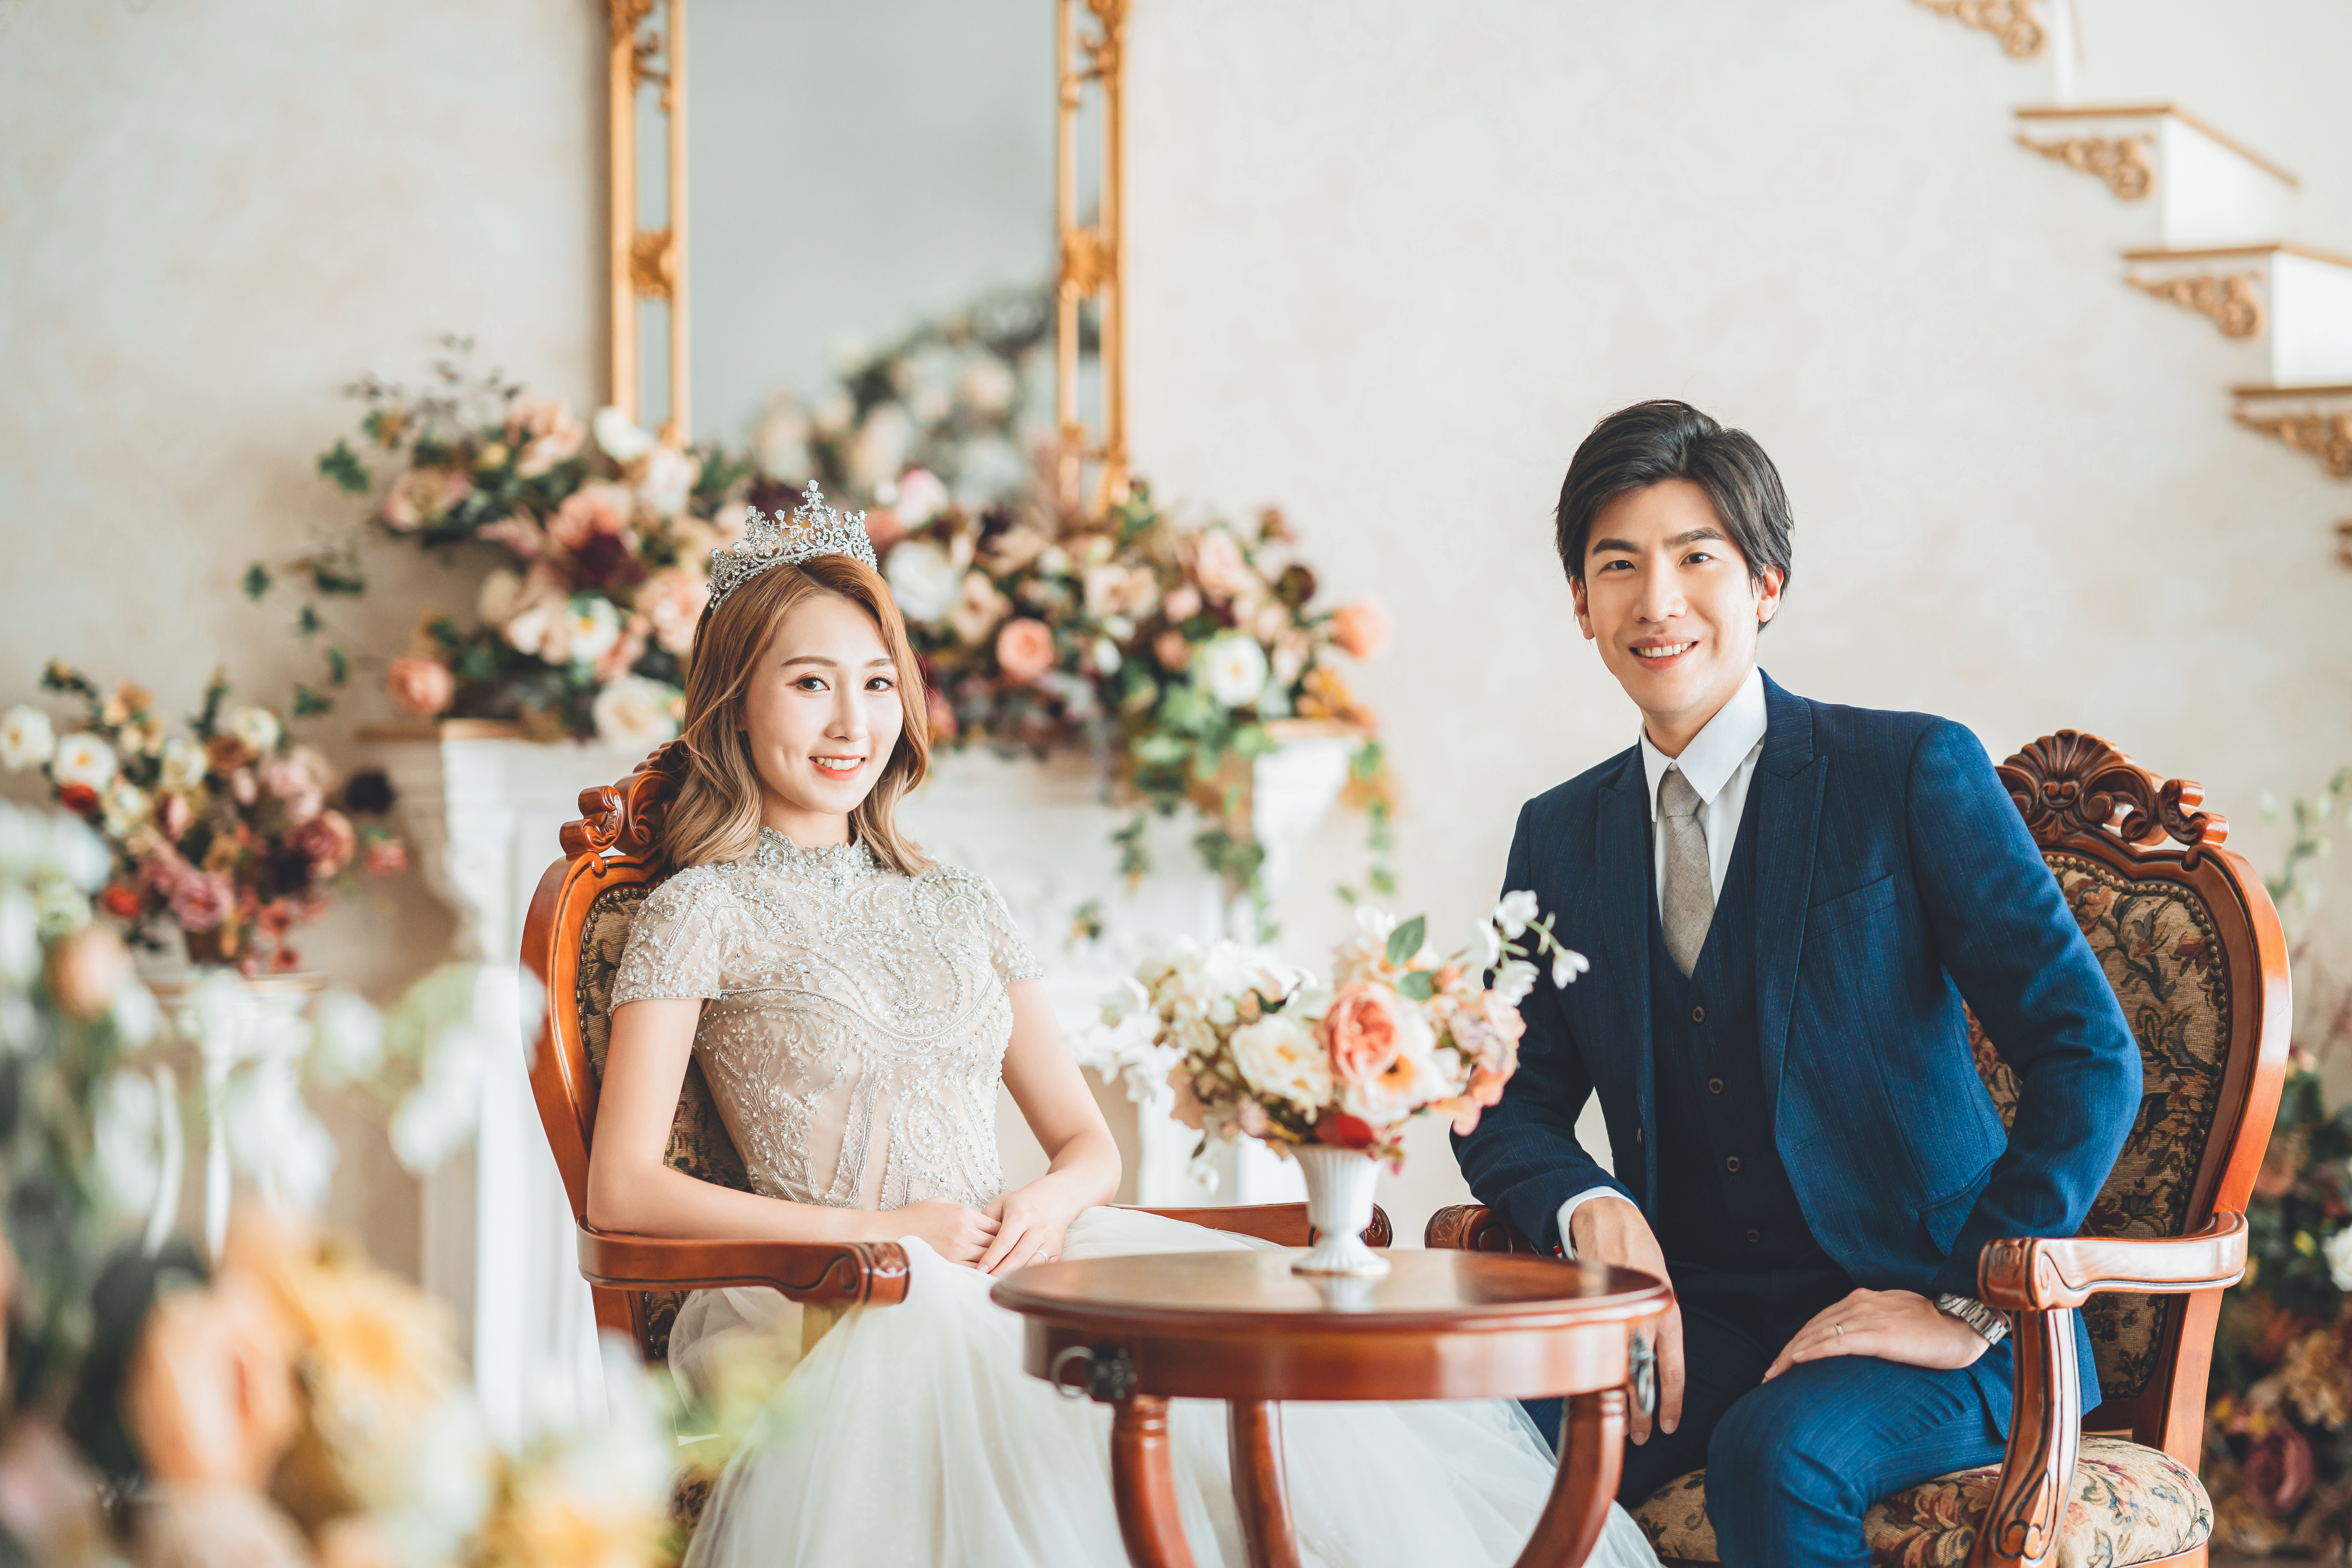 S.A.Wedding一連兩天免費韓式攝影指導&婚紗試身體驗